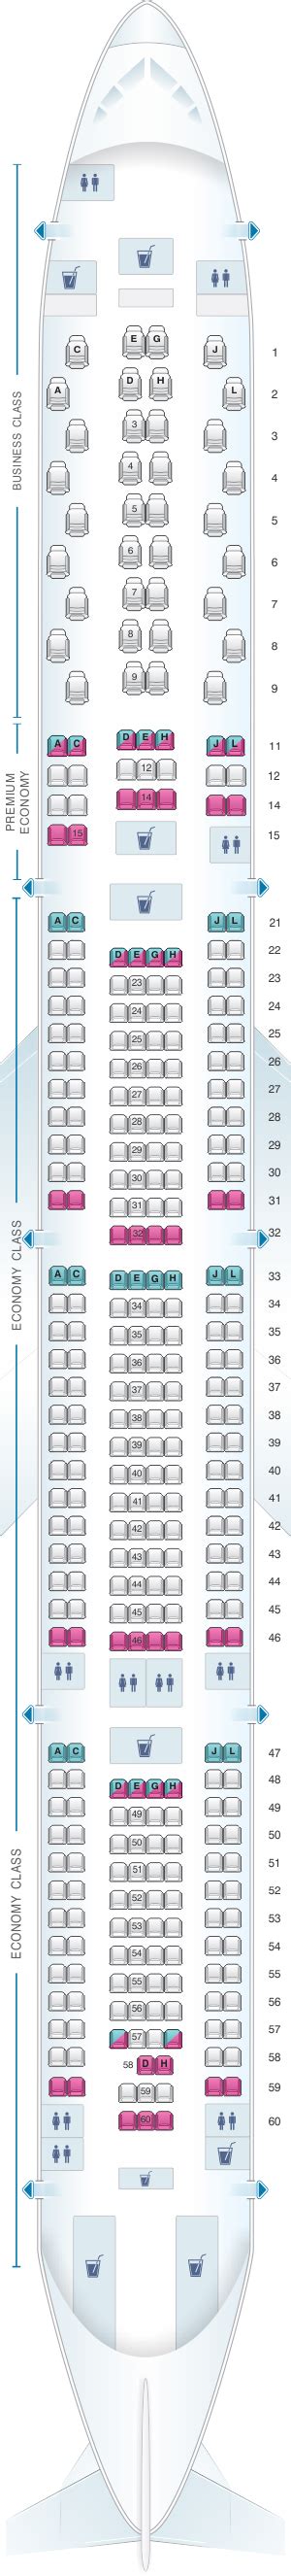 Seat Map Iberia Airbus A340 600 V2 Seatmaestro